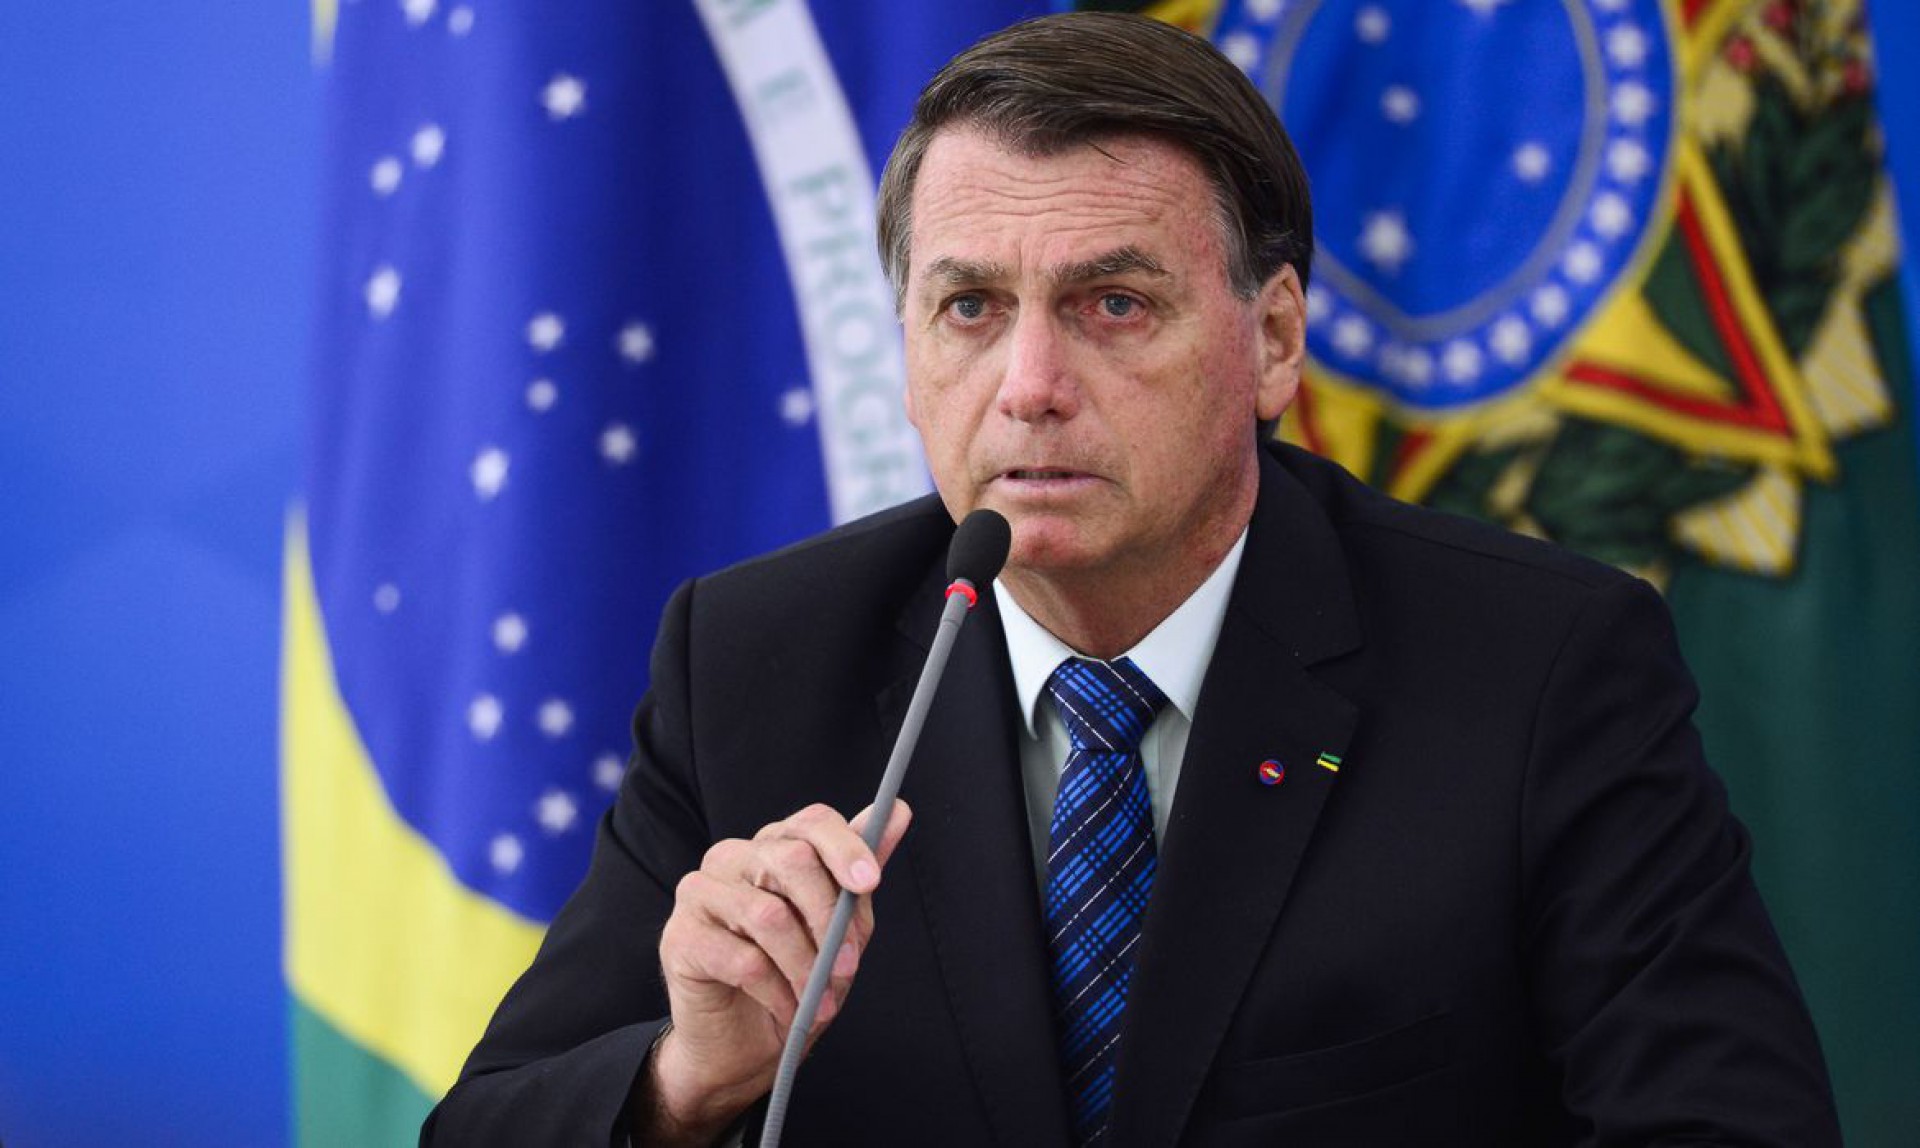 O presidente Jair Bolsonaro durante pronunciamento sobre preço dos combustíveis e a política de reajustes adotada pela Petrobras. (Foto: Marcelo Camargo/Agência Brasil)